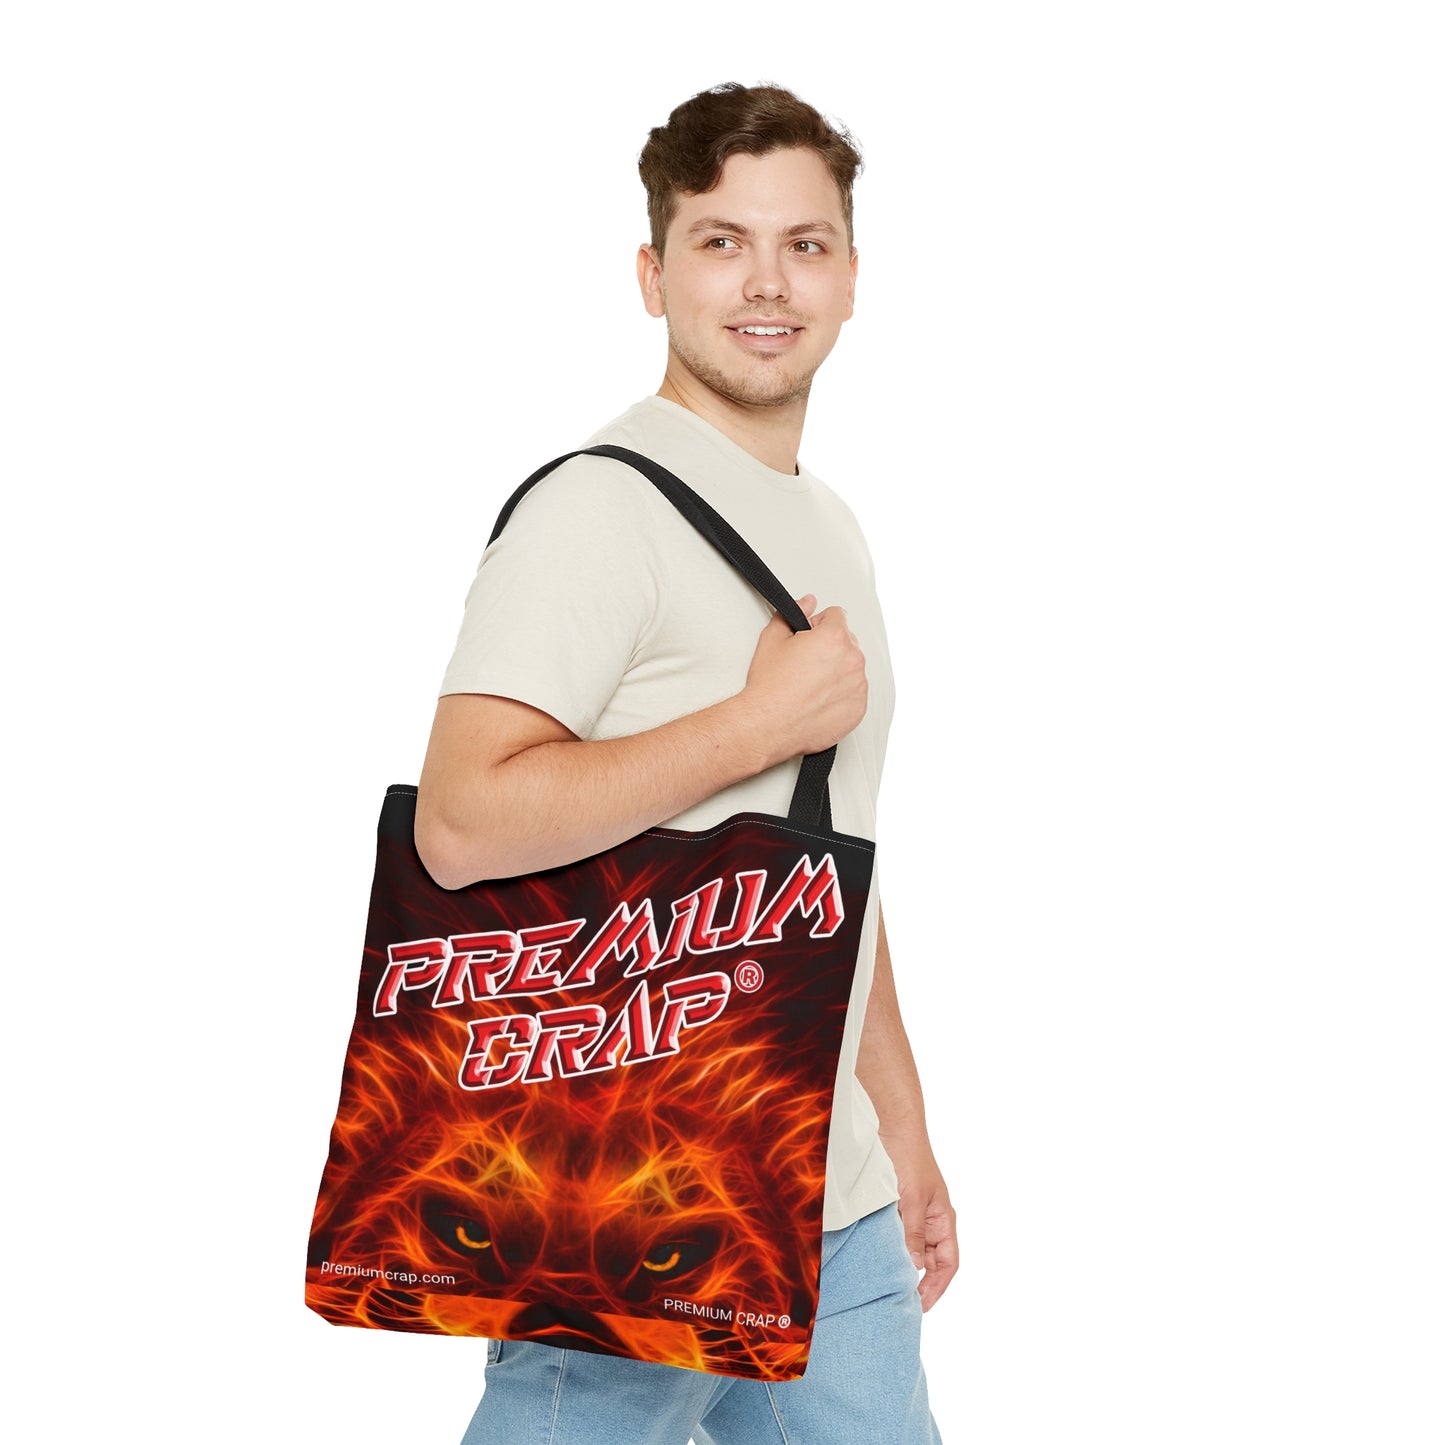 Premium Crap Artistry Tote Bag